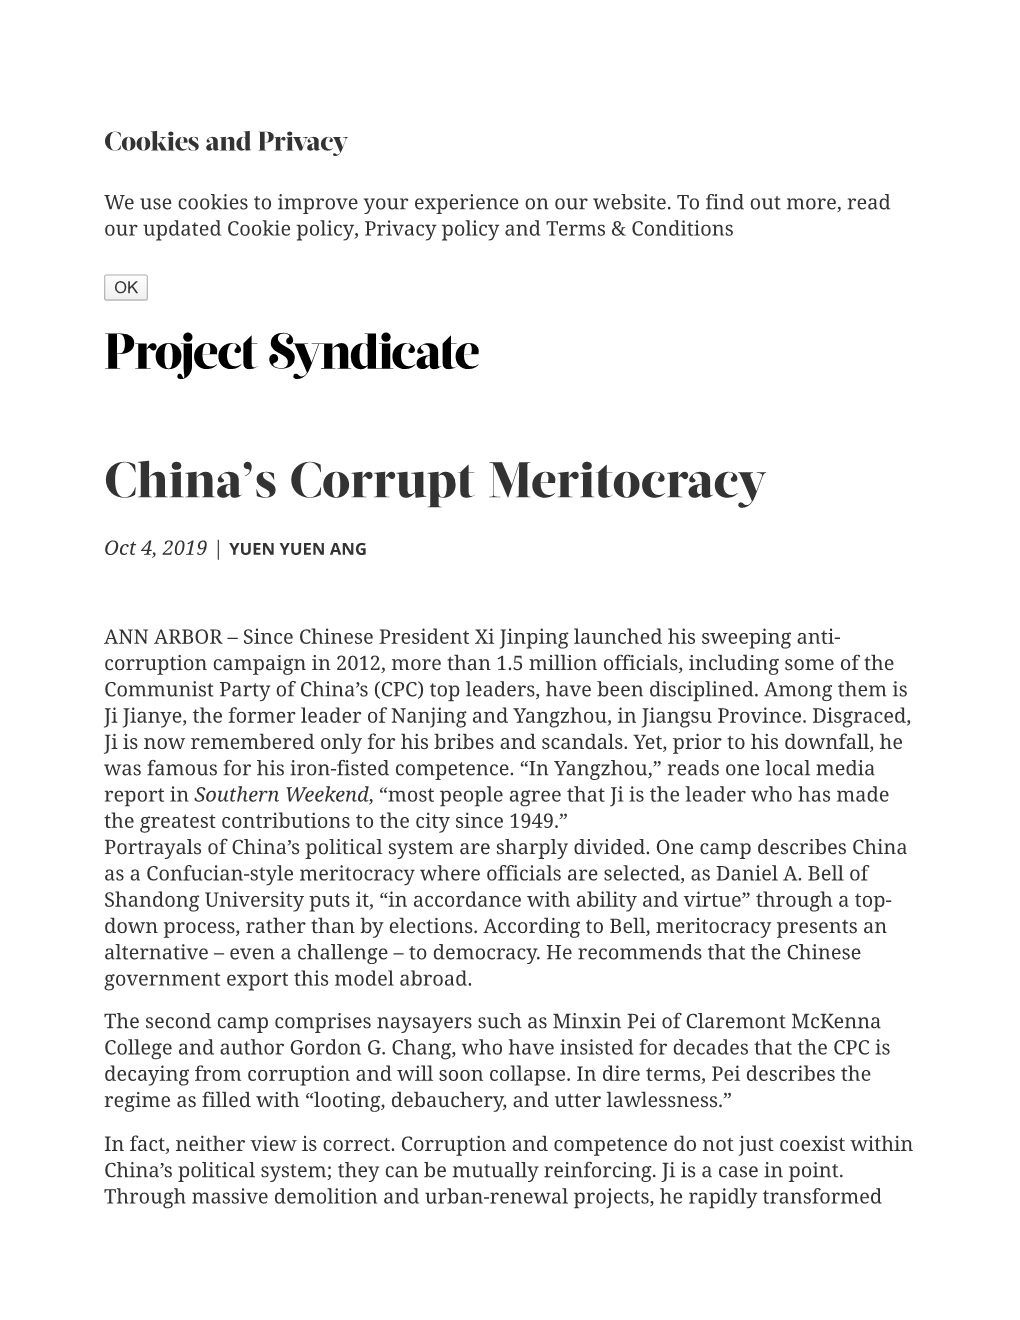 China's Corrupt Meritocracy